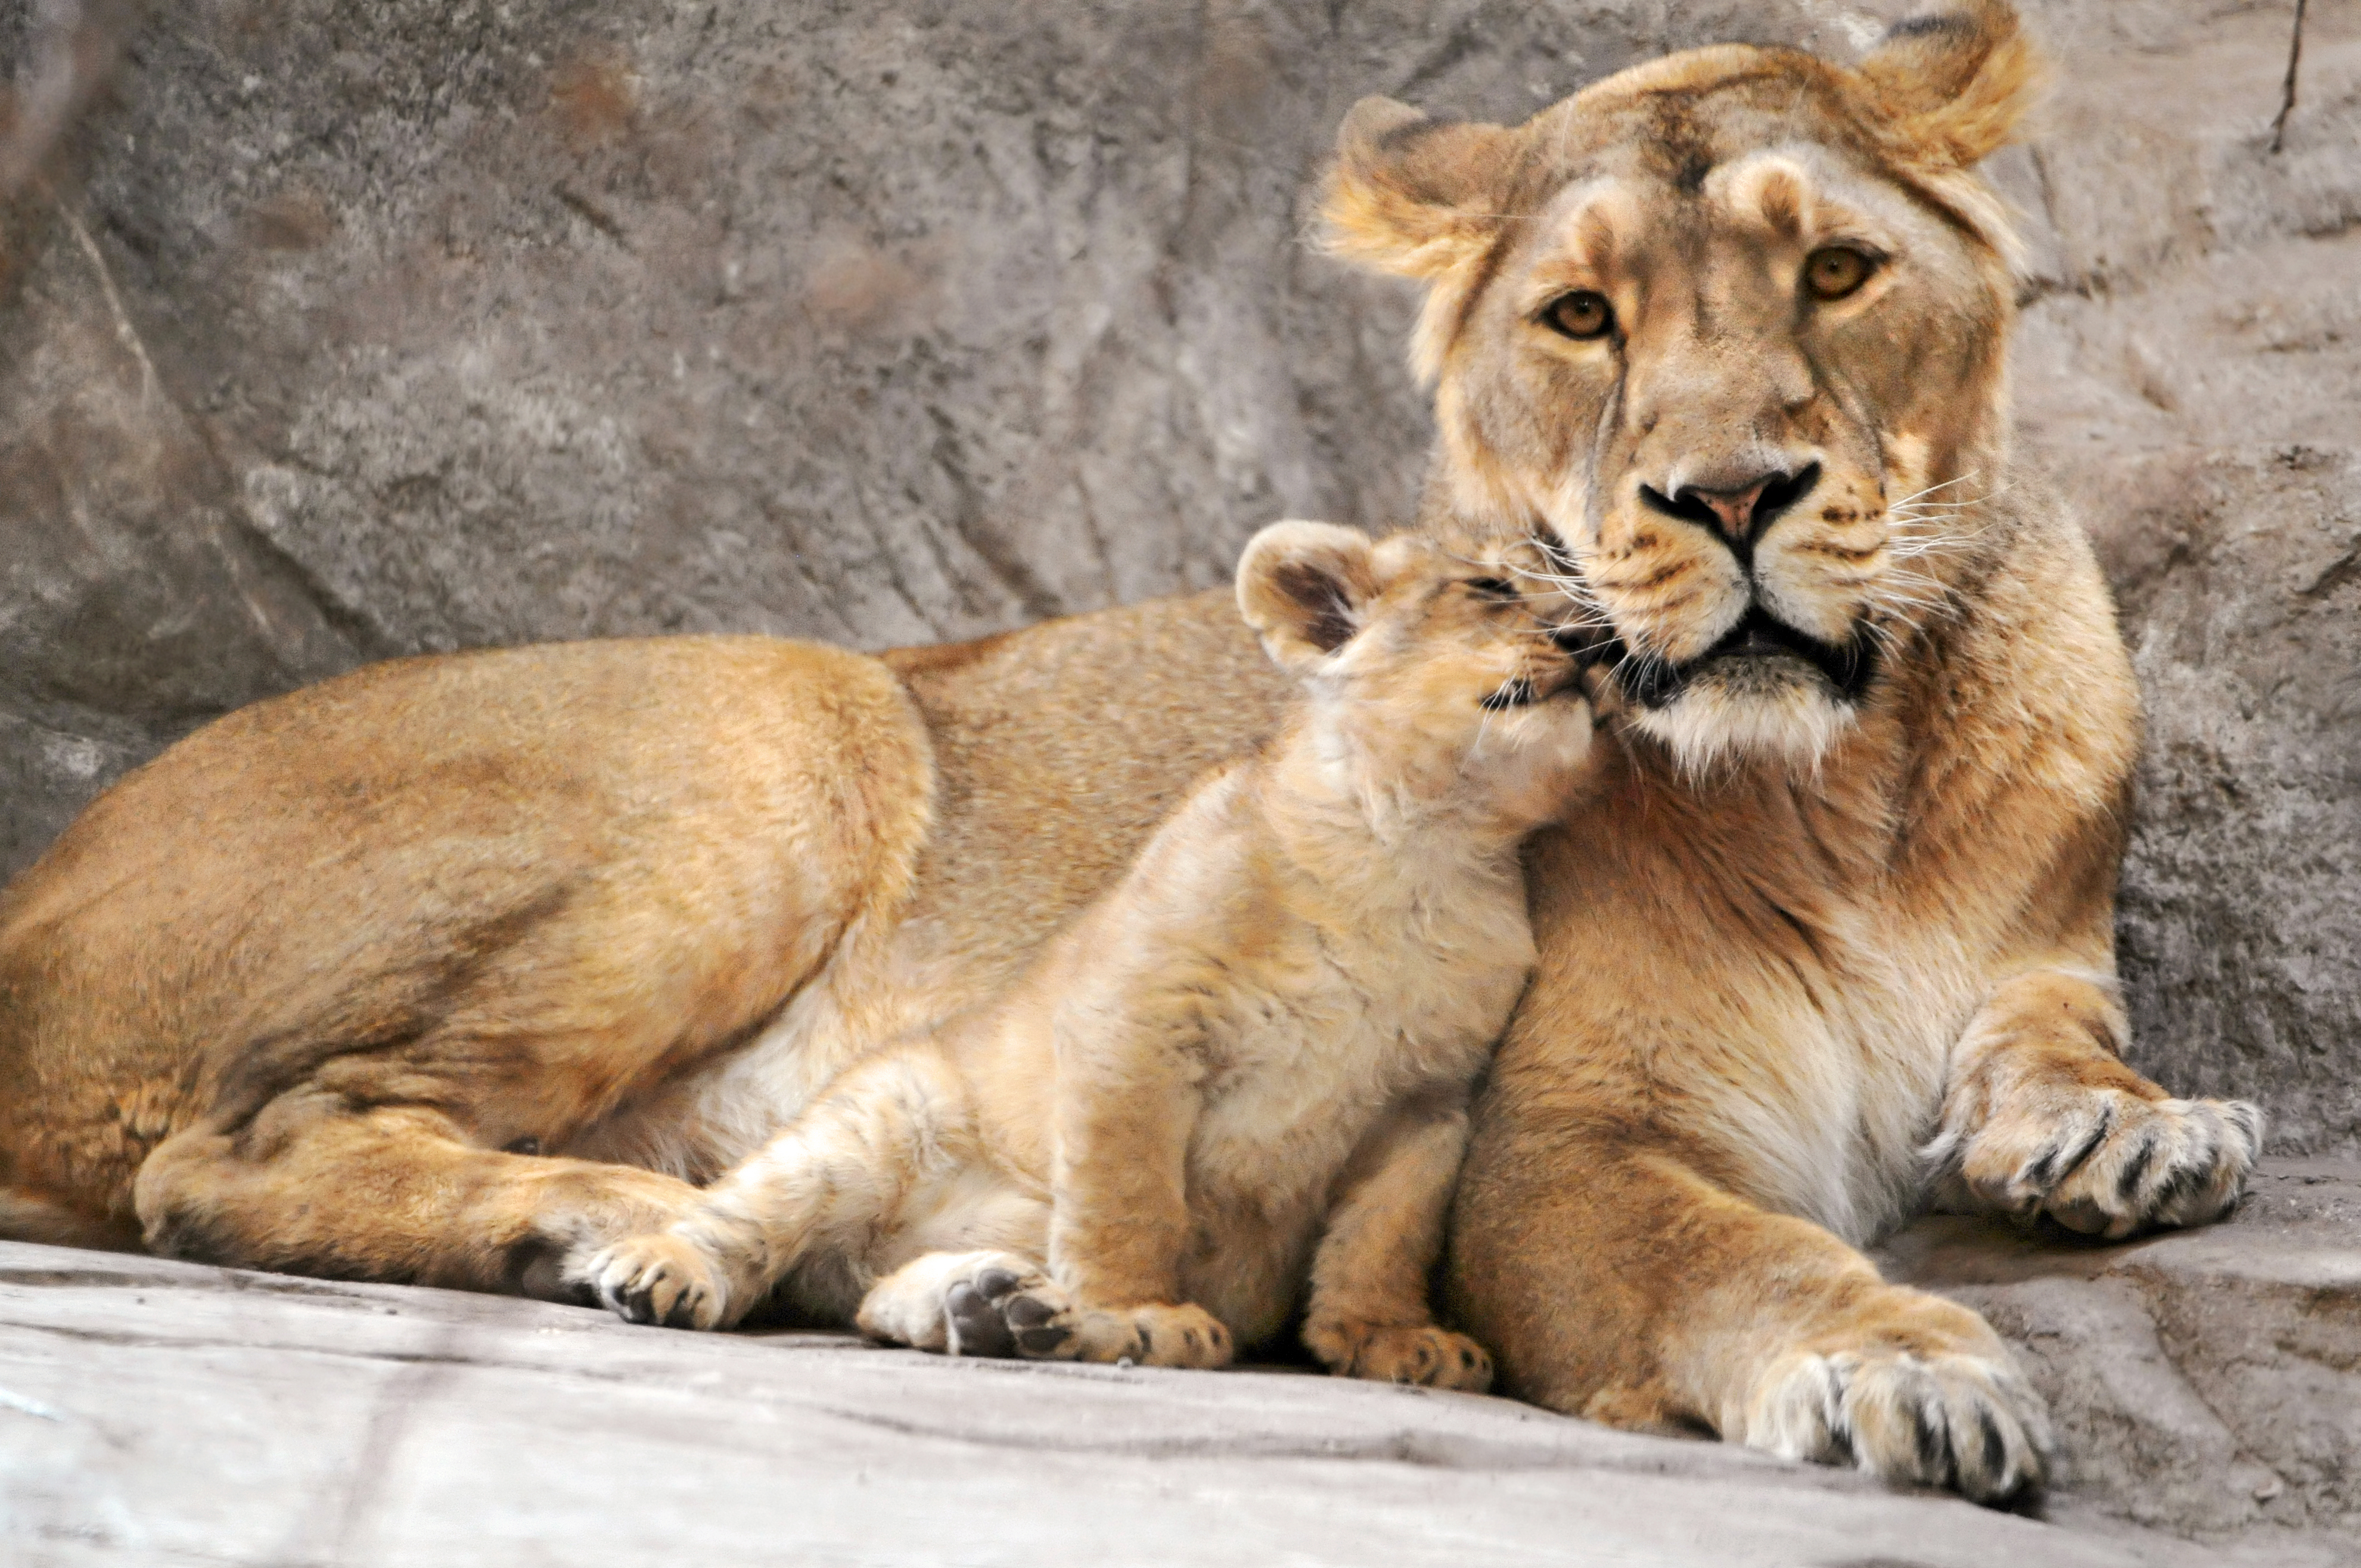 フリー画像 動物写真 哺乳類 ネコ科 ライオン 親子 家族 フリー素材 画像素材なら 無料 フリー写真素材のフリーフォト